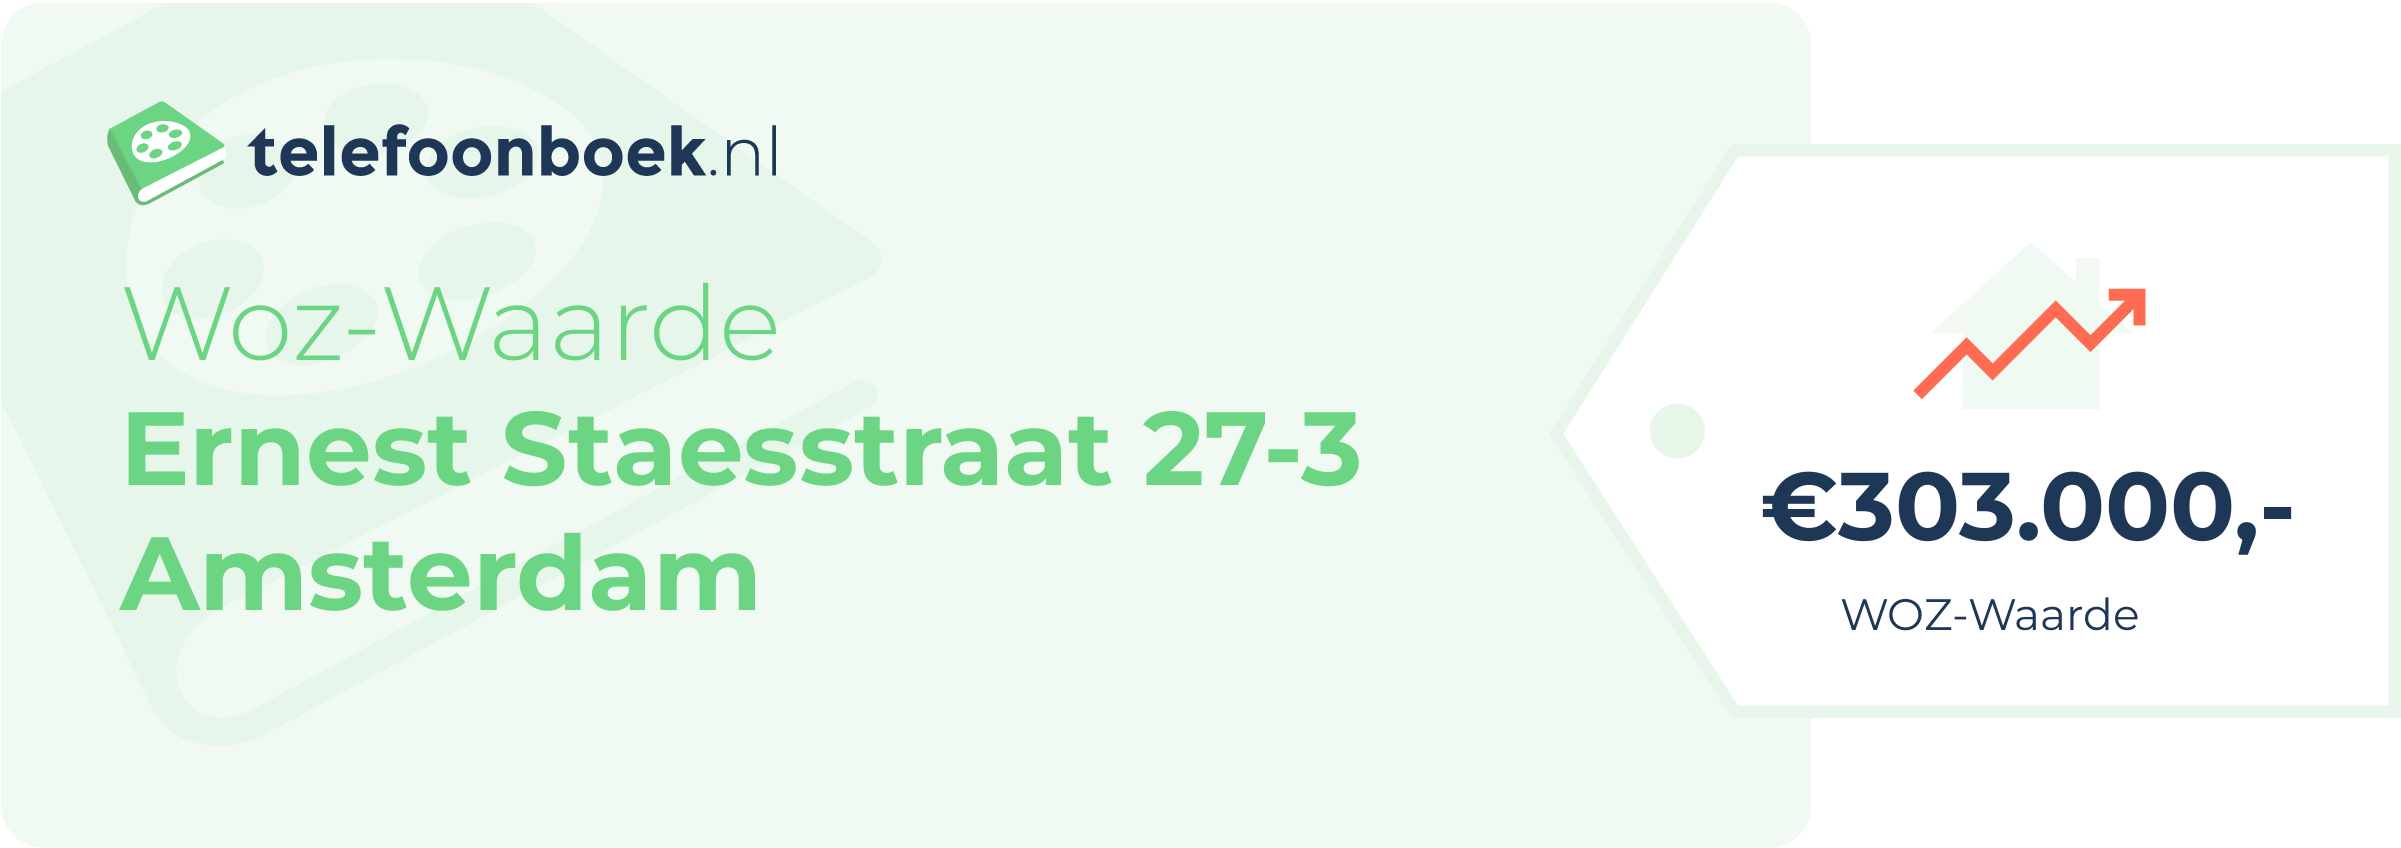 WOZ-waarde Ernest Staesstraat 27-3 Amsterdam